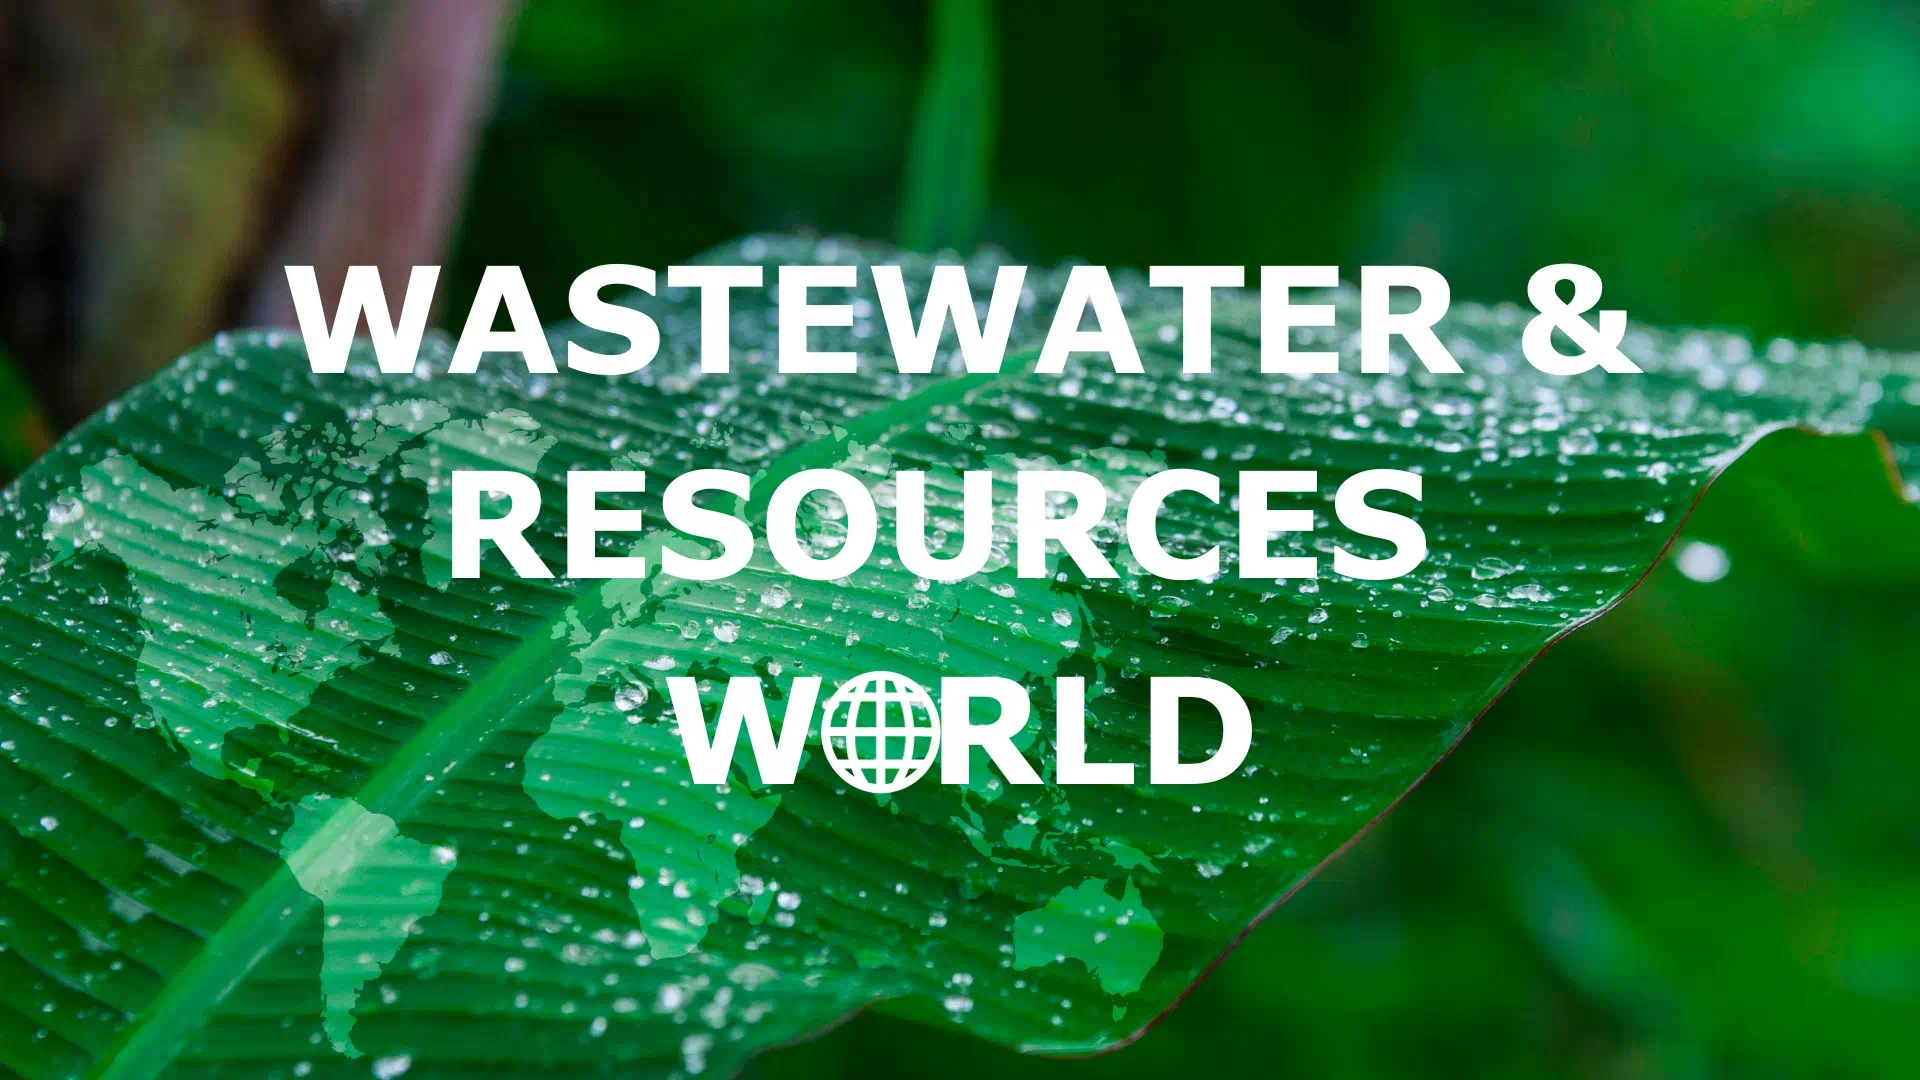 Wastewater Resources World